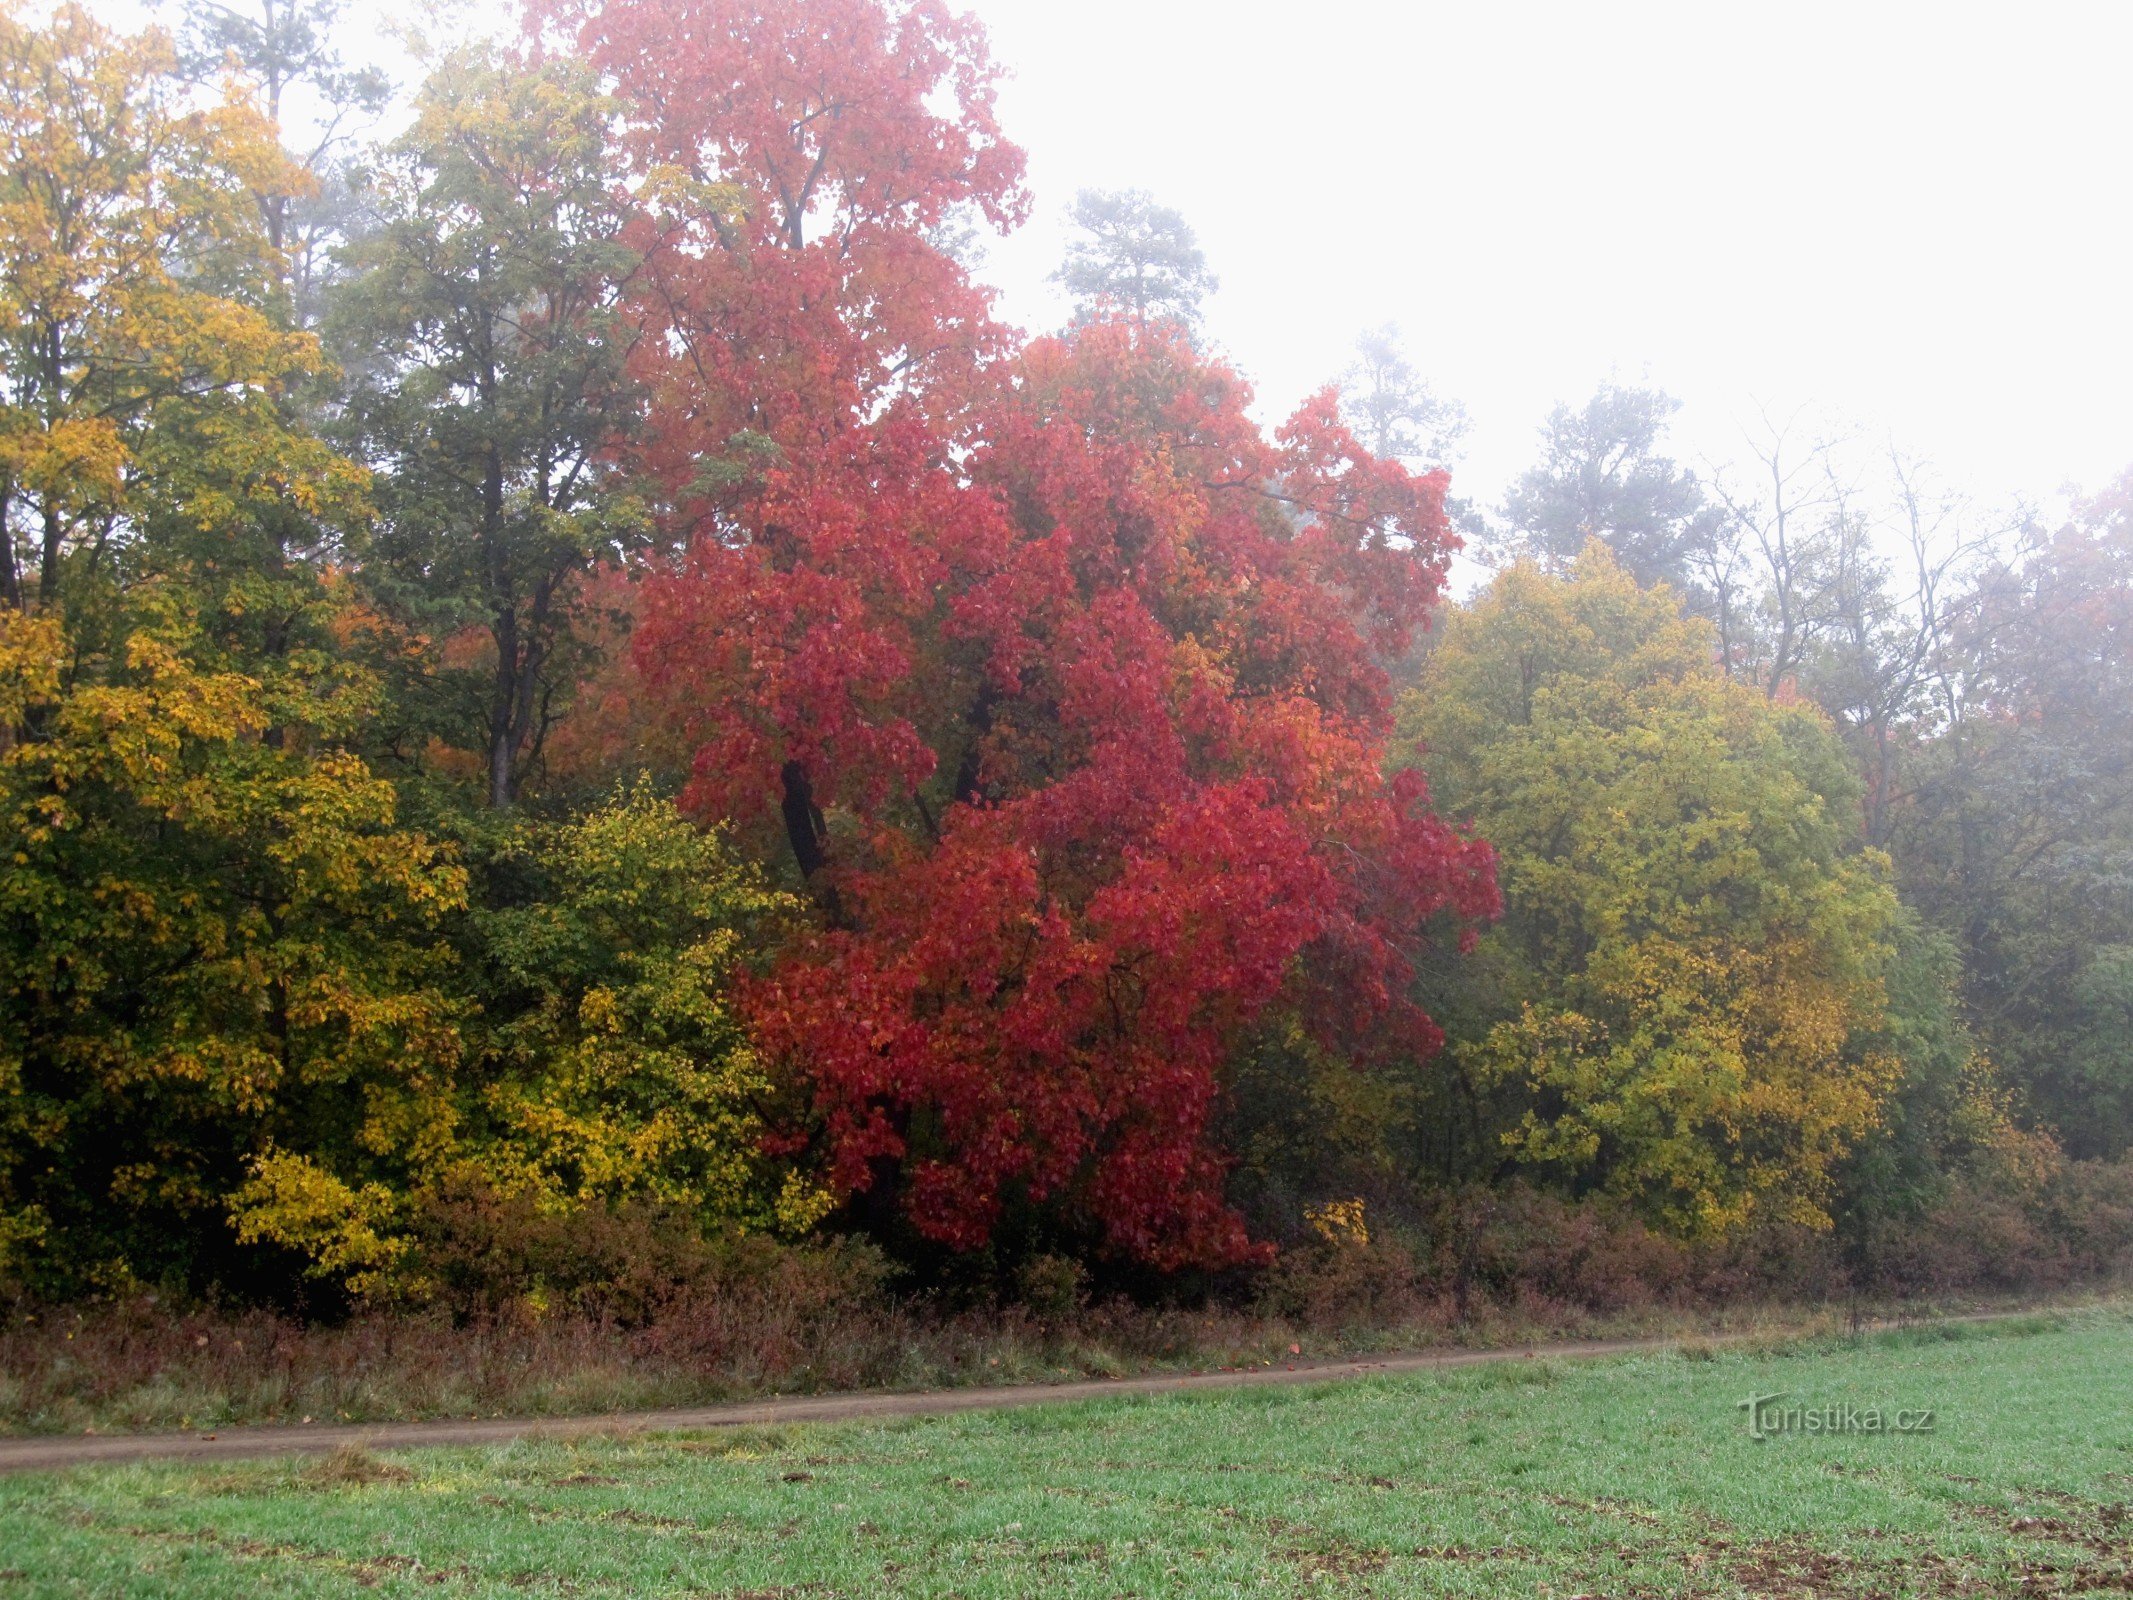 03 I colori dell'autunno